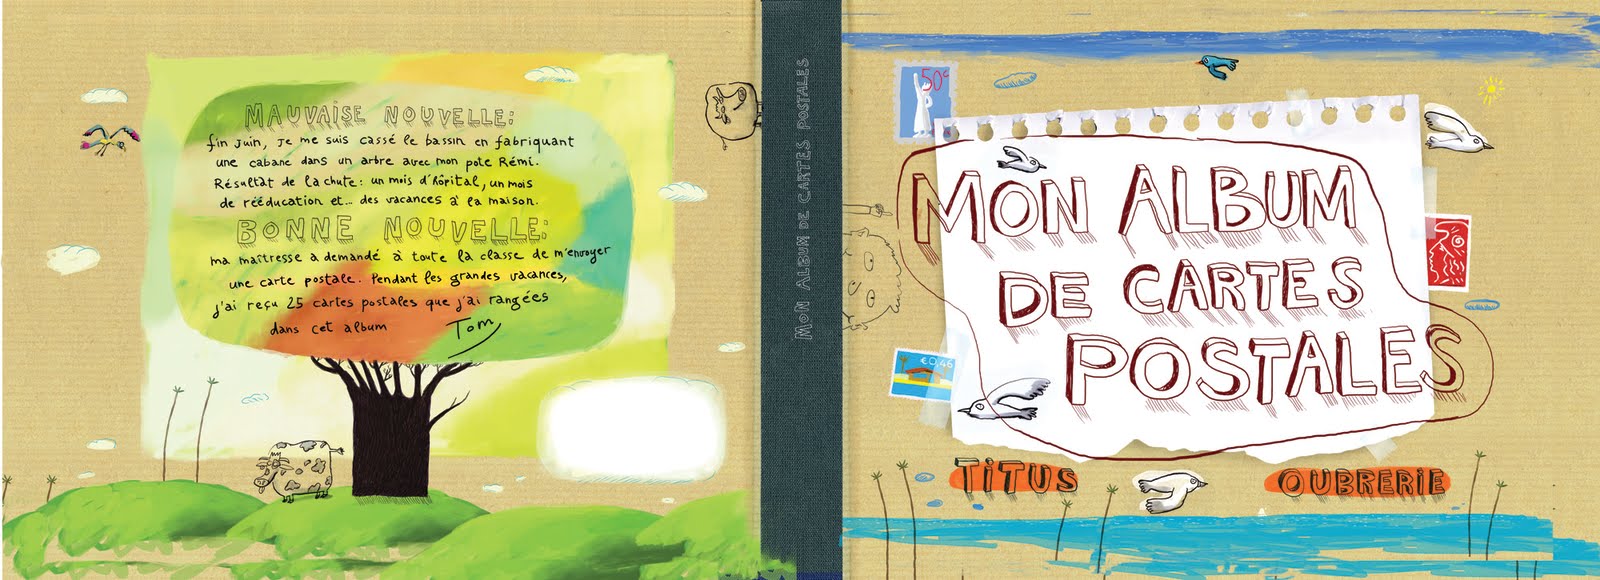 Clément Oubrerie: Mon album de cartes postales